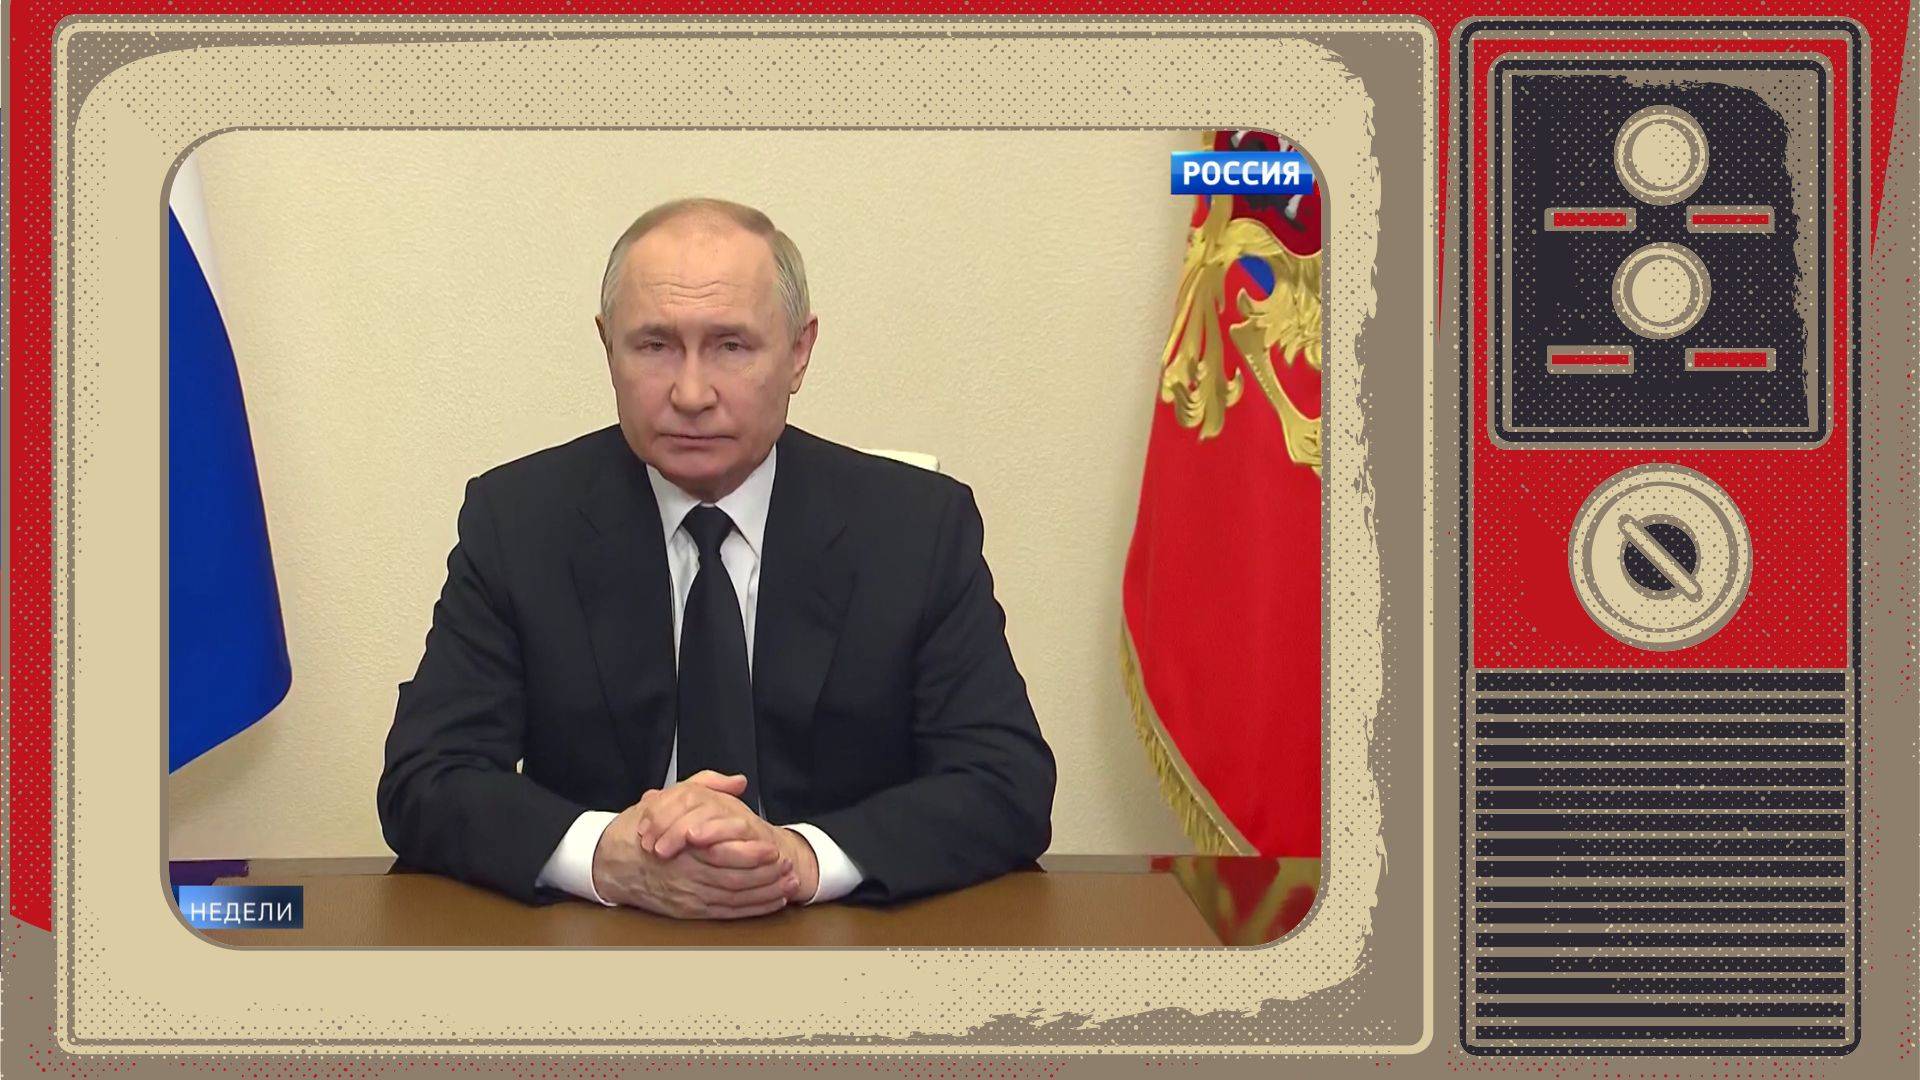 Grafika: Putin wygłasza orędzie, Zdjęcie wstawione w ramke starego telewizora